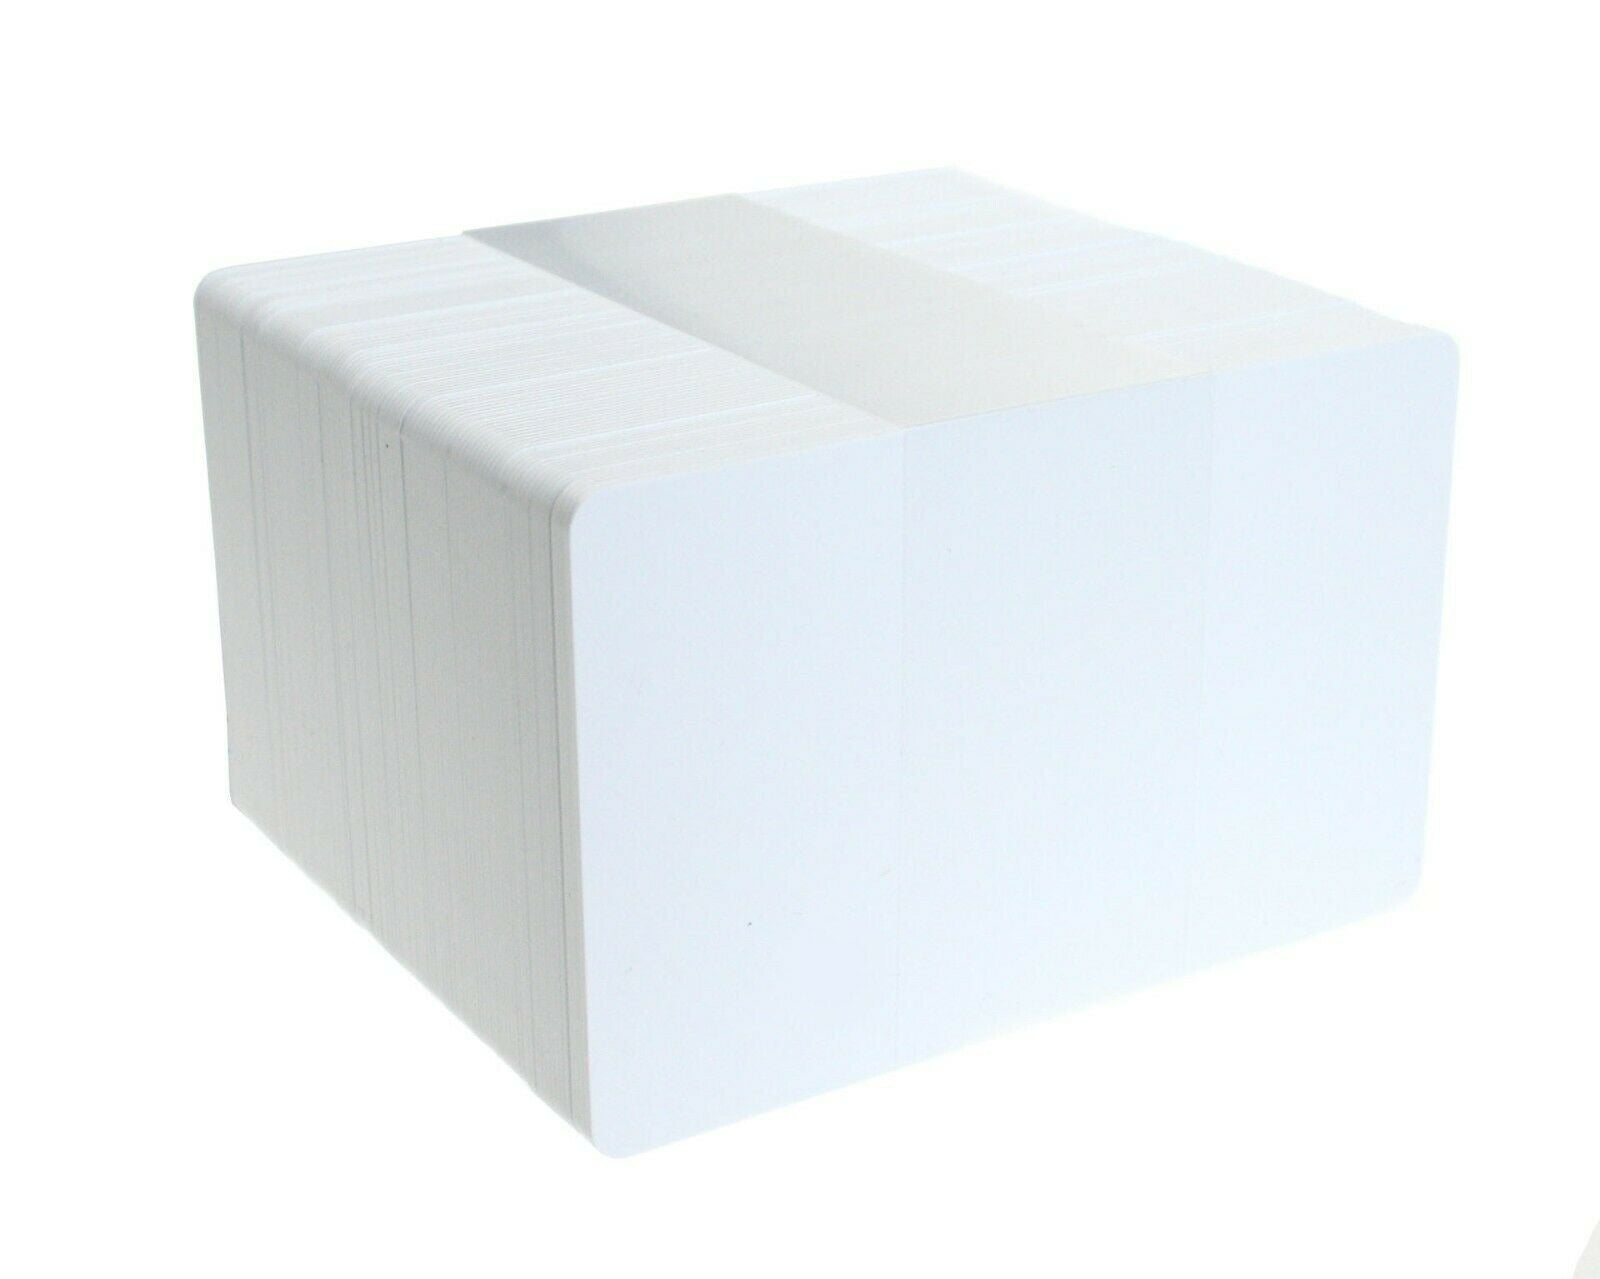 Blank White I-Code SLI UID Plastic Cards (Pack of 100)